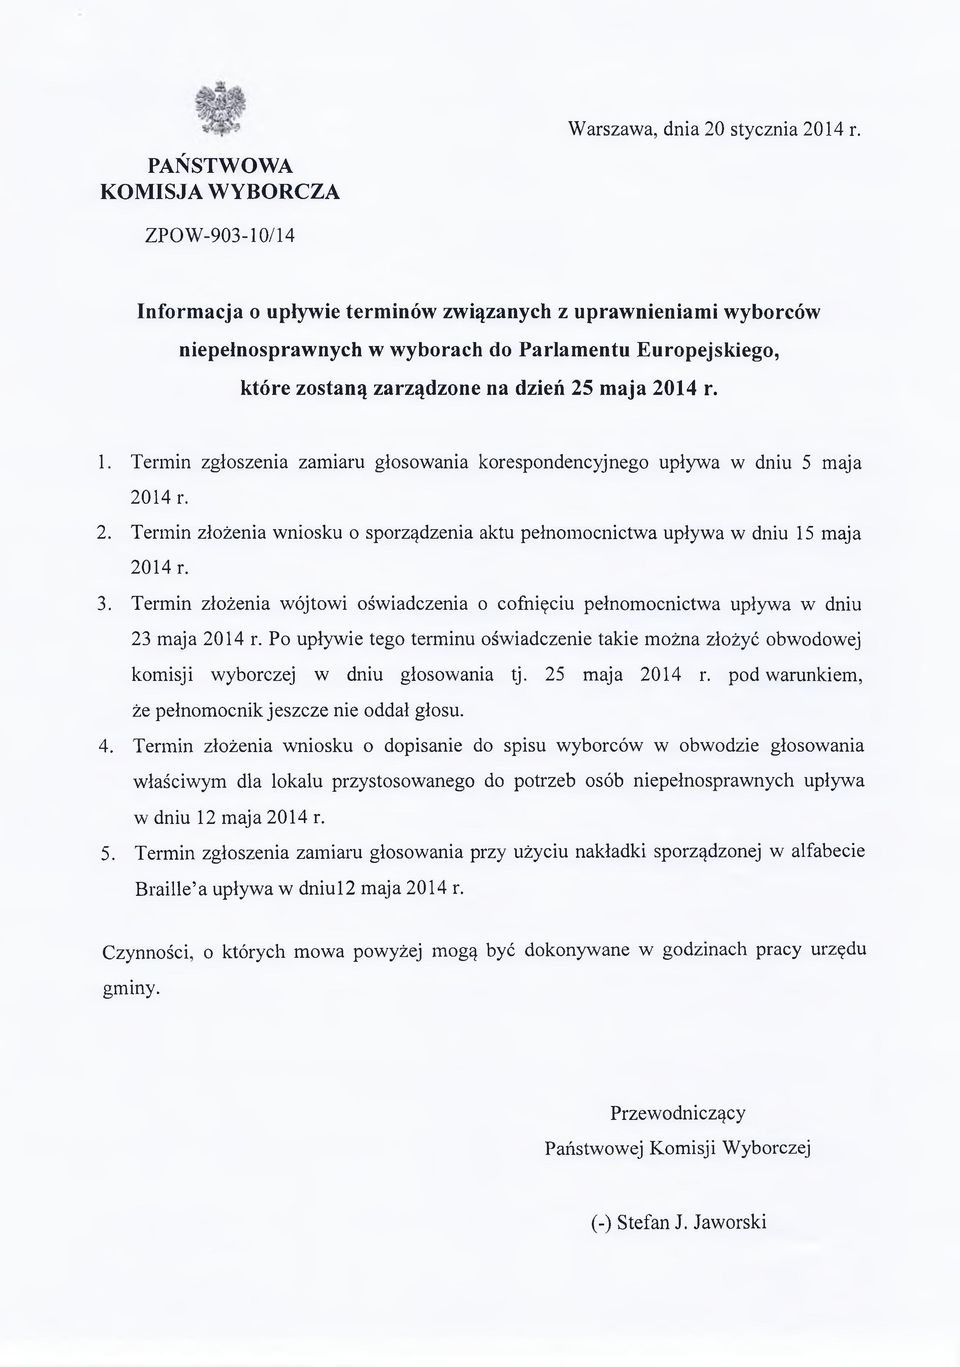 25 maja 2014 r. 1. Termin zgłoszenia zamiaru głosowania korespondencyjnego upływa w dniu 5 maja 2014 r. 2. Termin złożenia wniosku o sporządzenia aktu pełnomocnictwa upływa w dniu 15 maja 2014 r. 3.